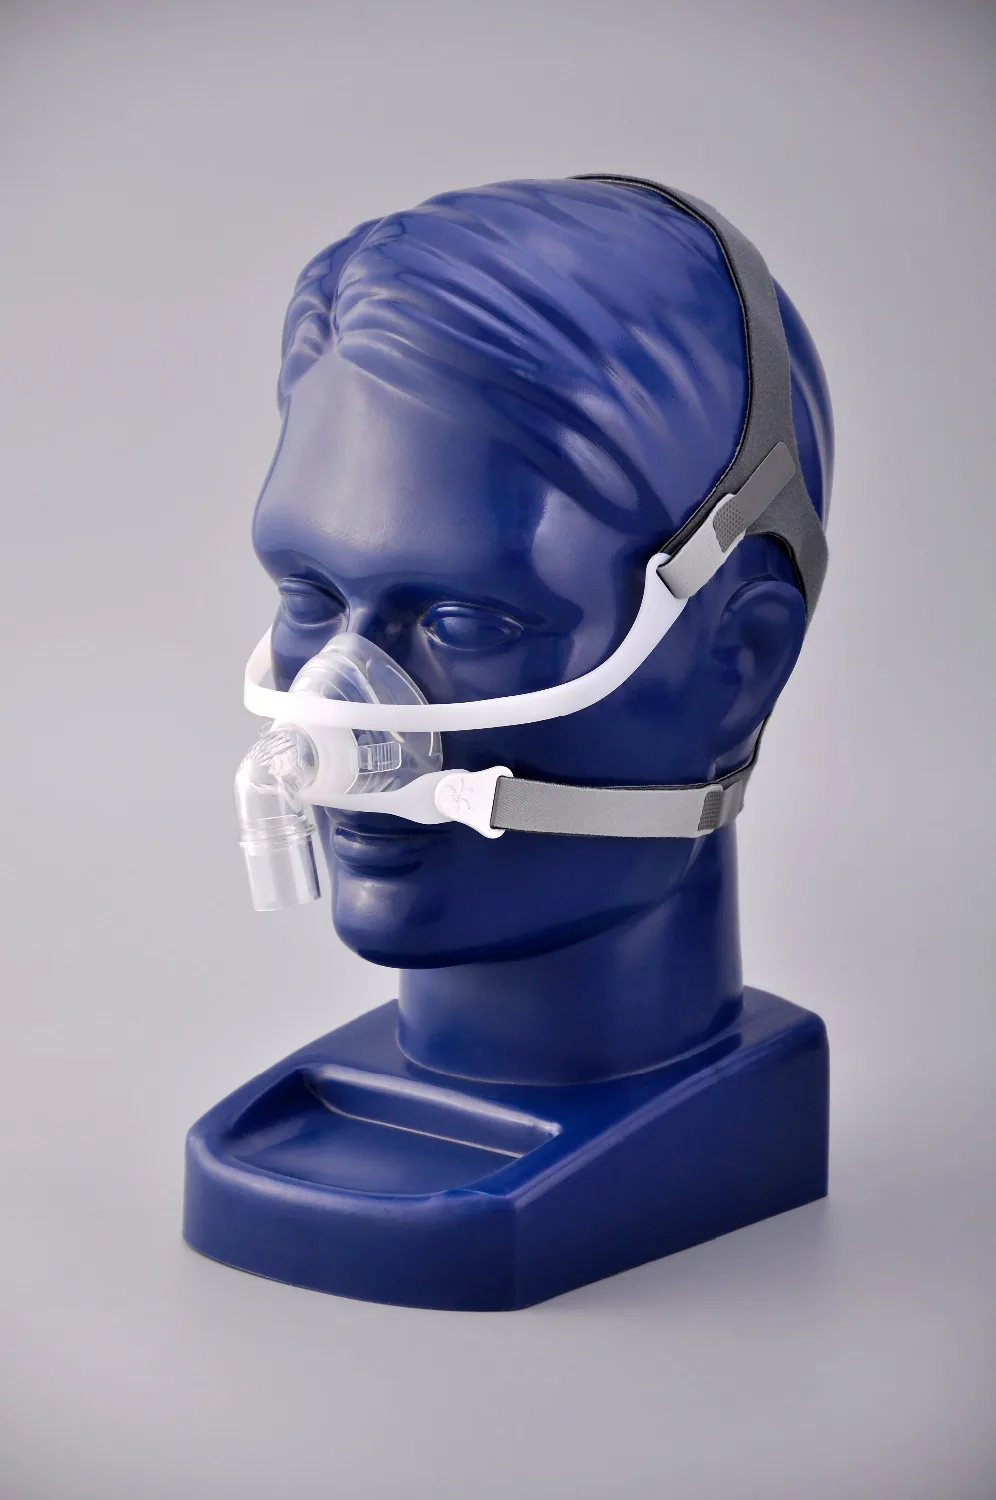 Назальная маска для сипап apap BIPAP МАШИНЫ размеры s/m/l имеют специальные эффекты анти храп и сна помощи